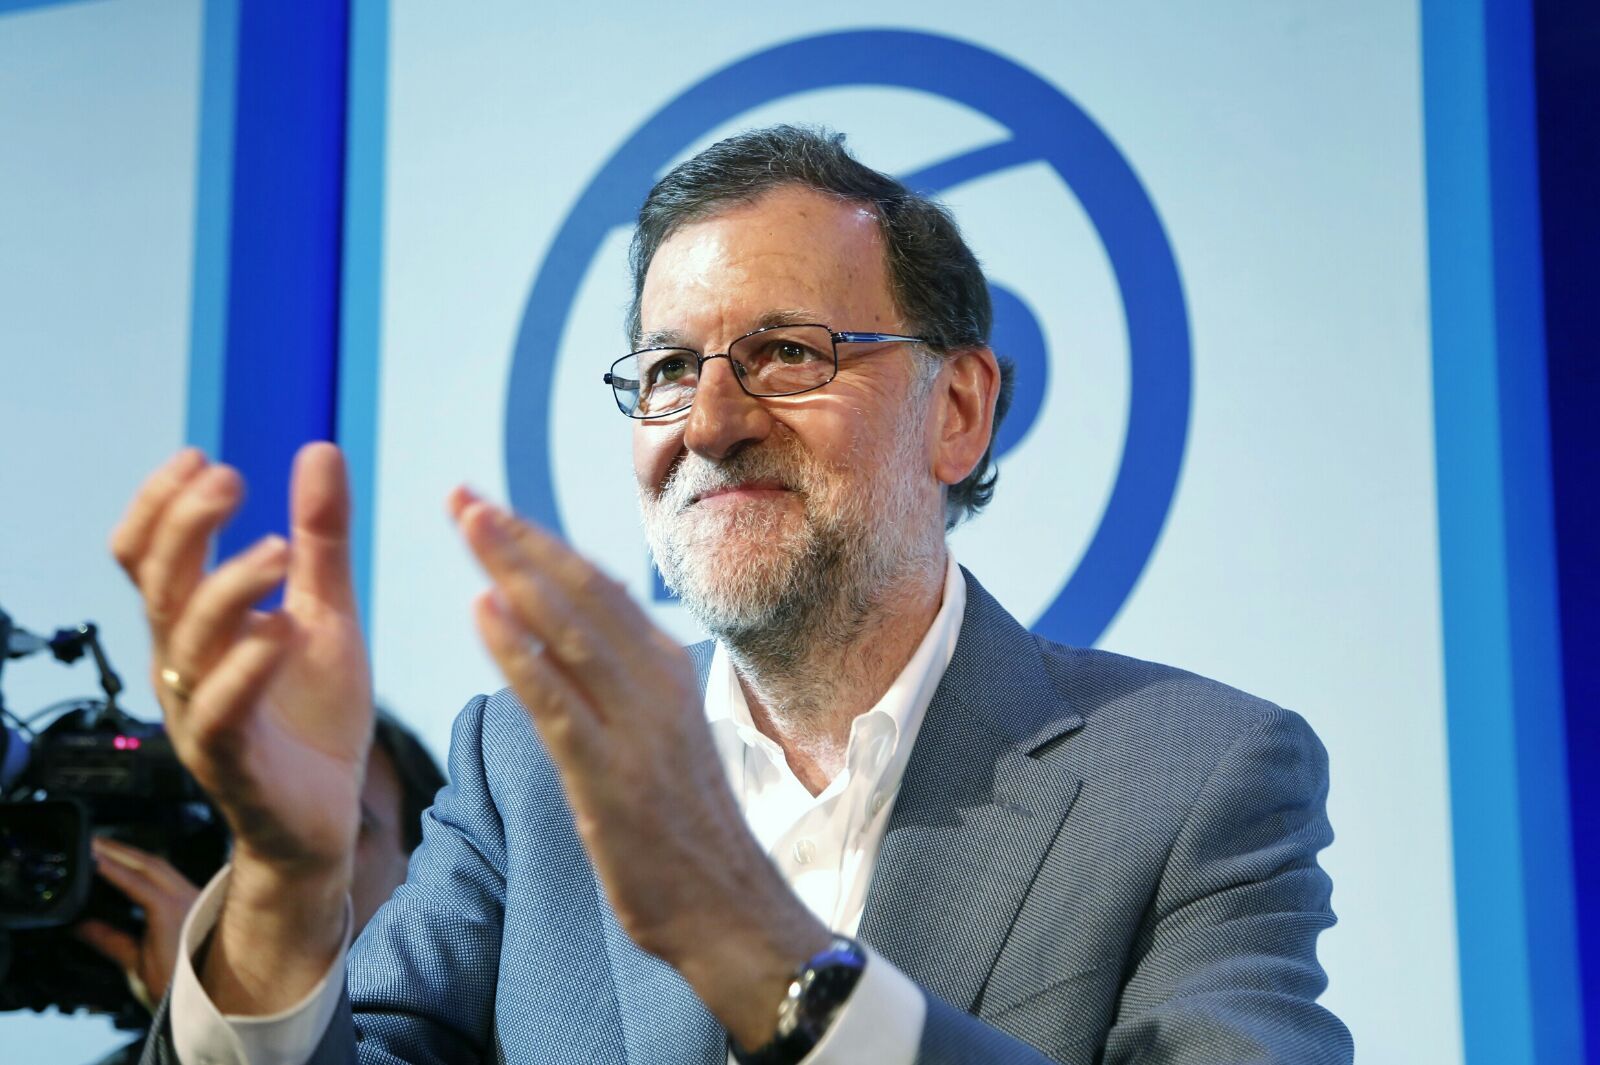 El PP va desviar diners públics per a la campanya de Rajoy del 2008, segons la Guàrdia Civil